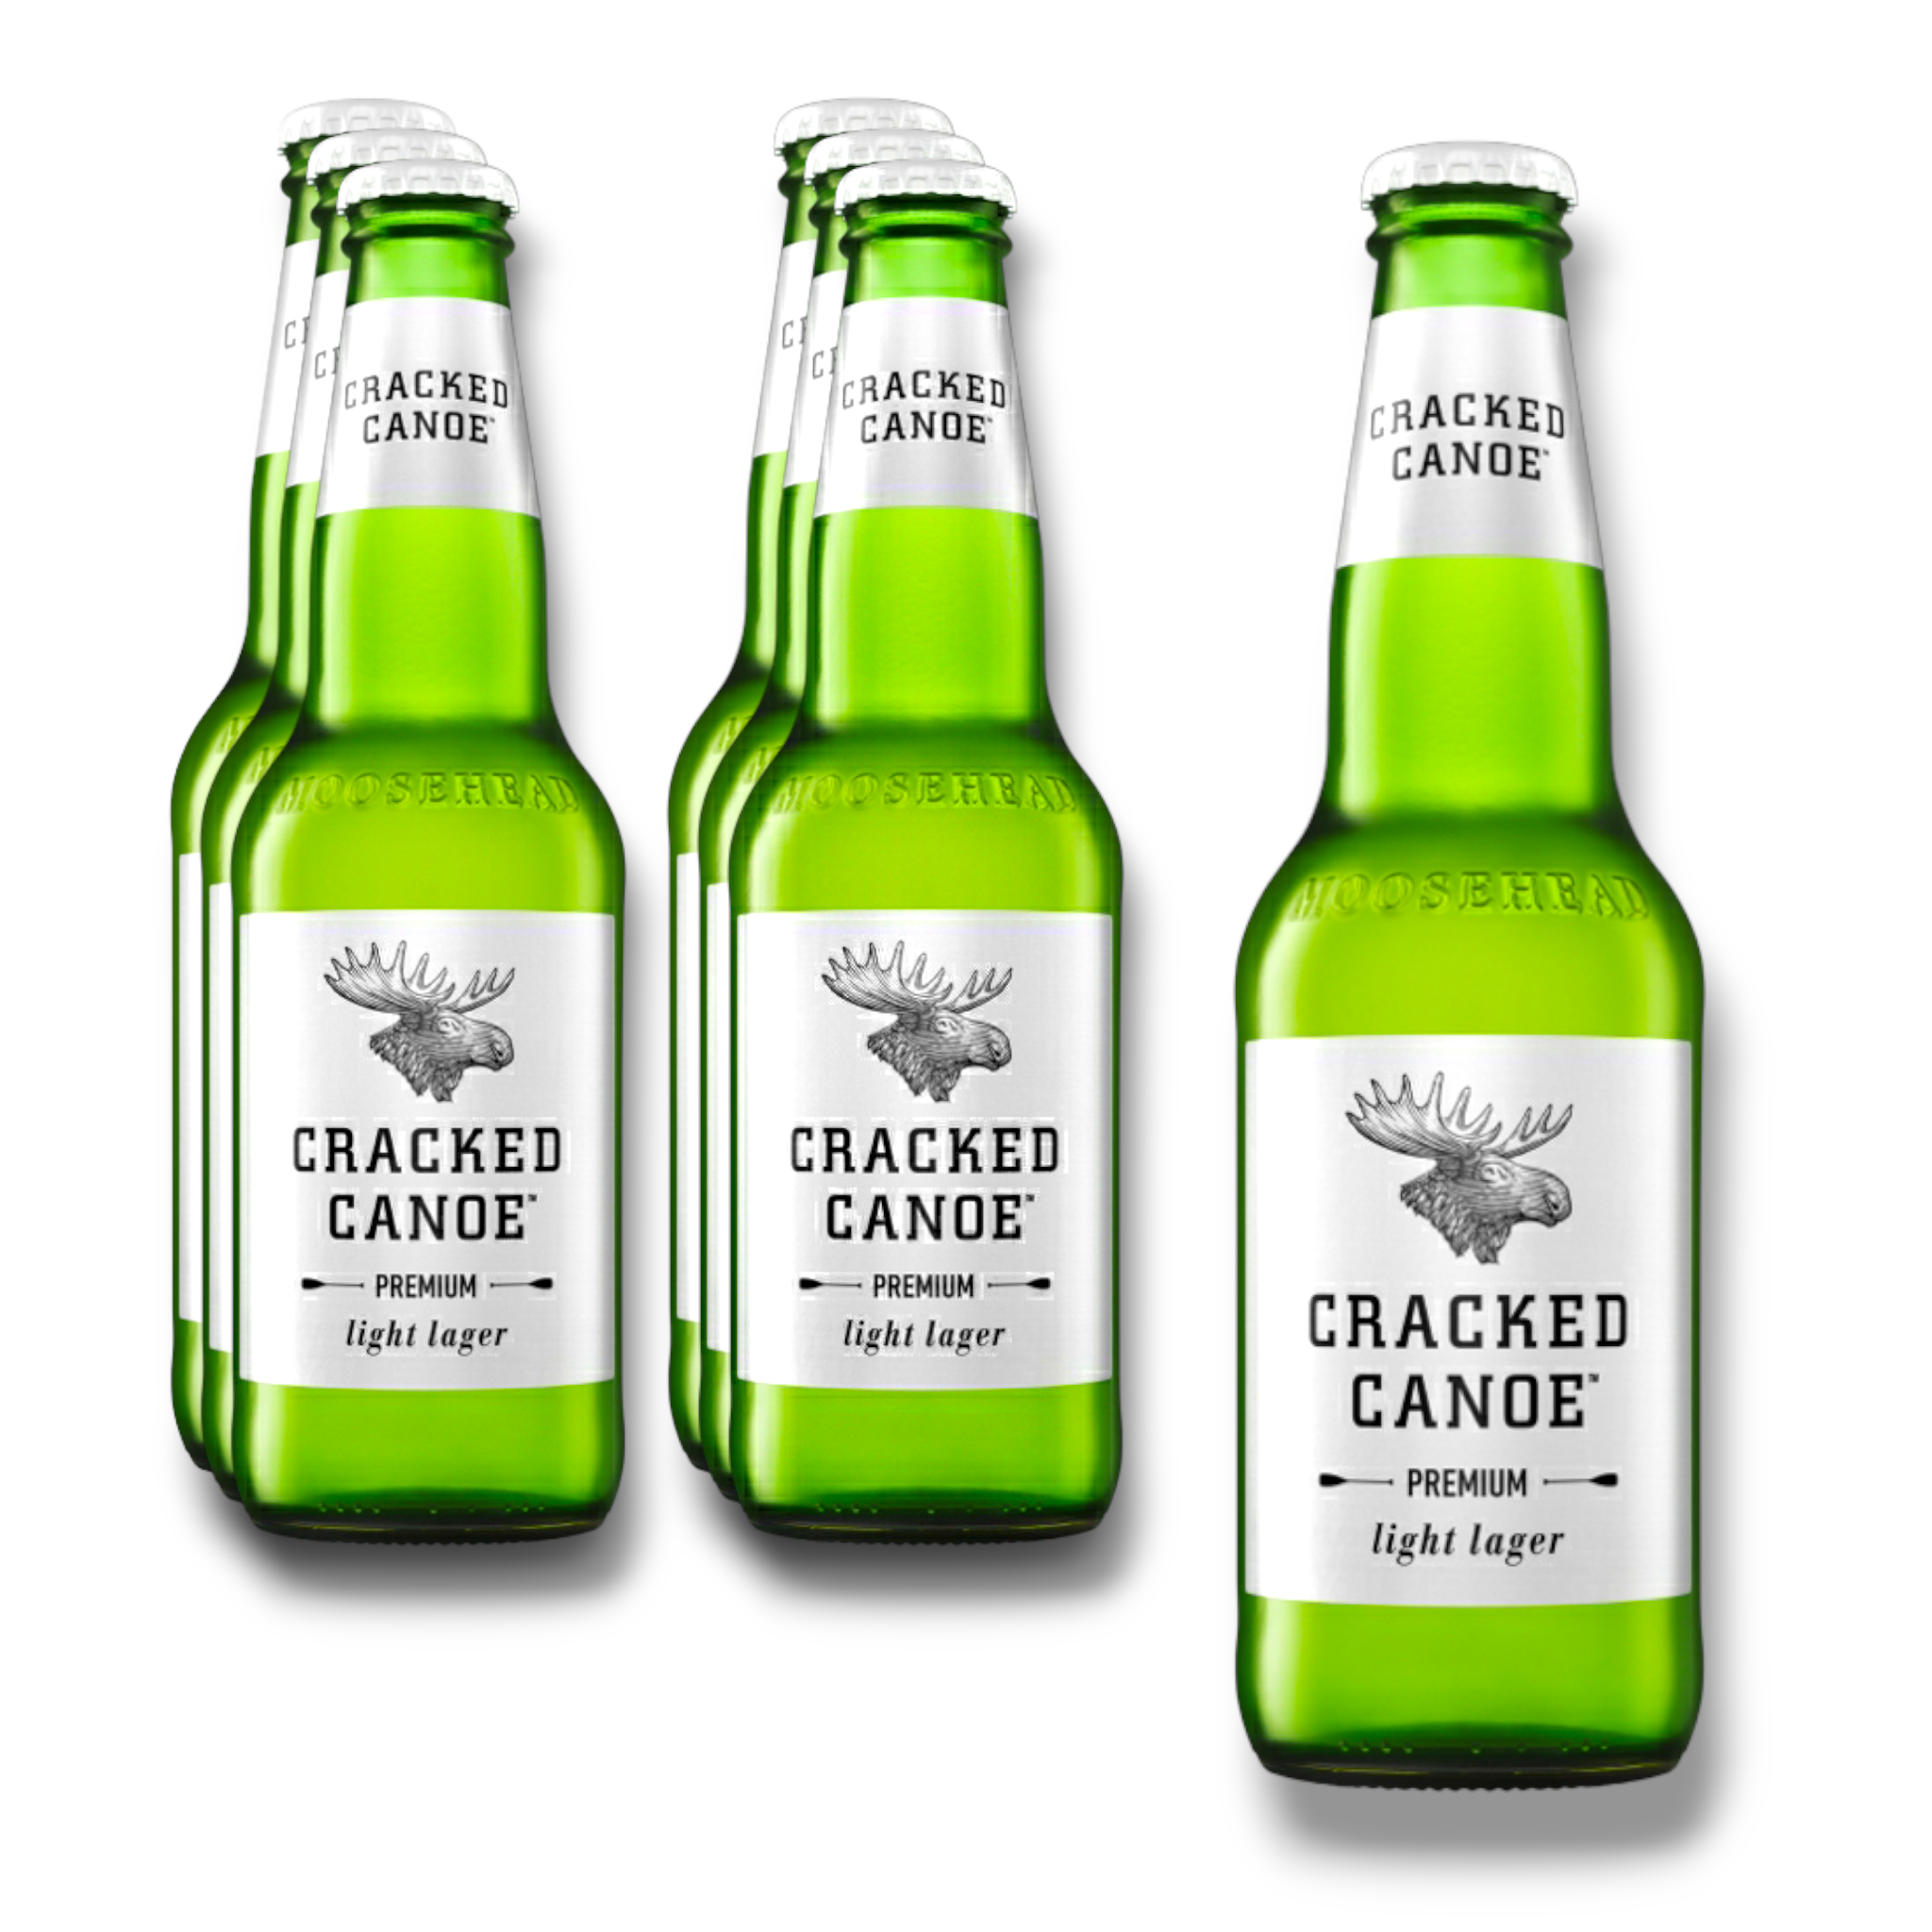 Moosehead Cracked Canoe Premium light Lager 341ml - Kalorienreduziertes Bier aus Kanada mit 3,5% Vol.